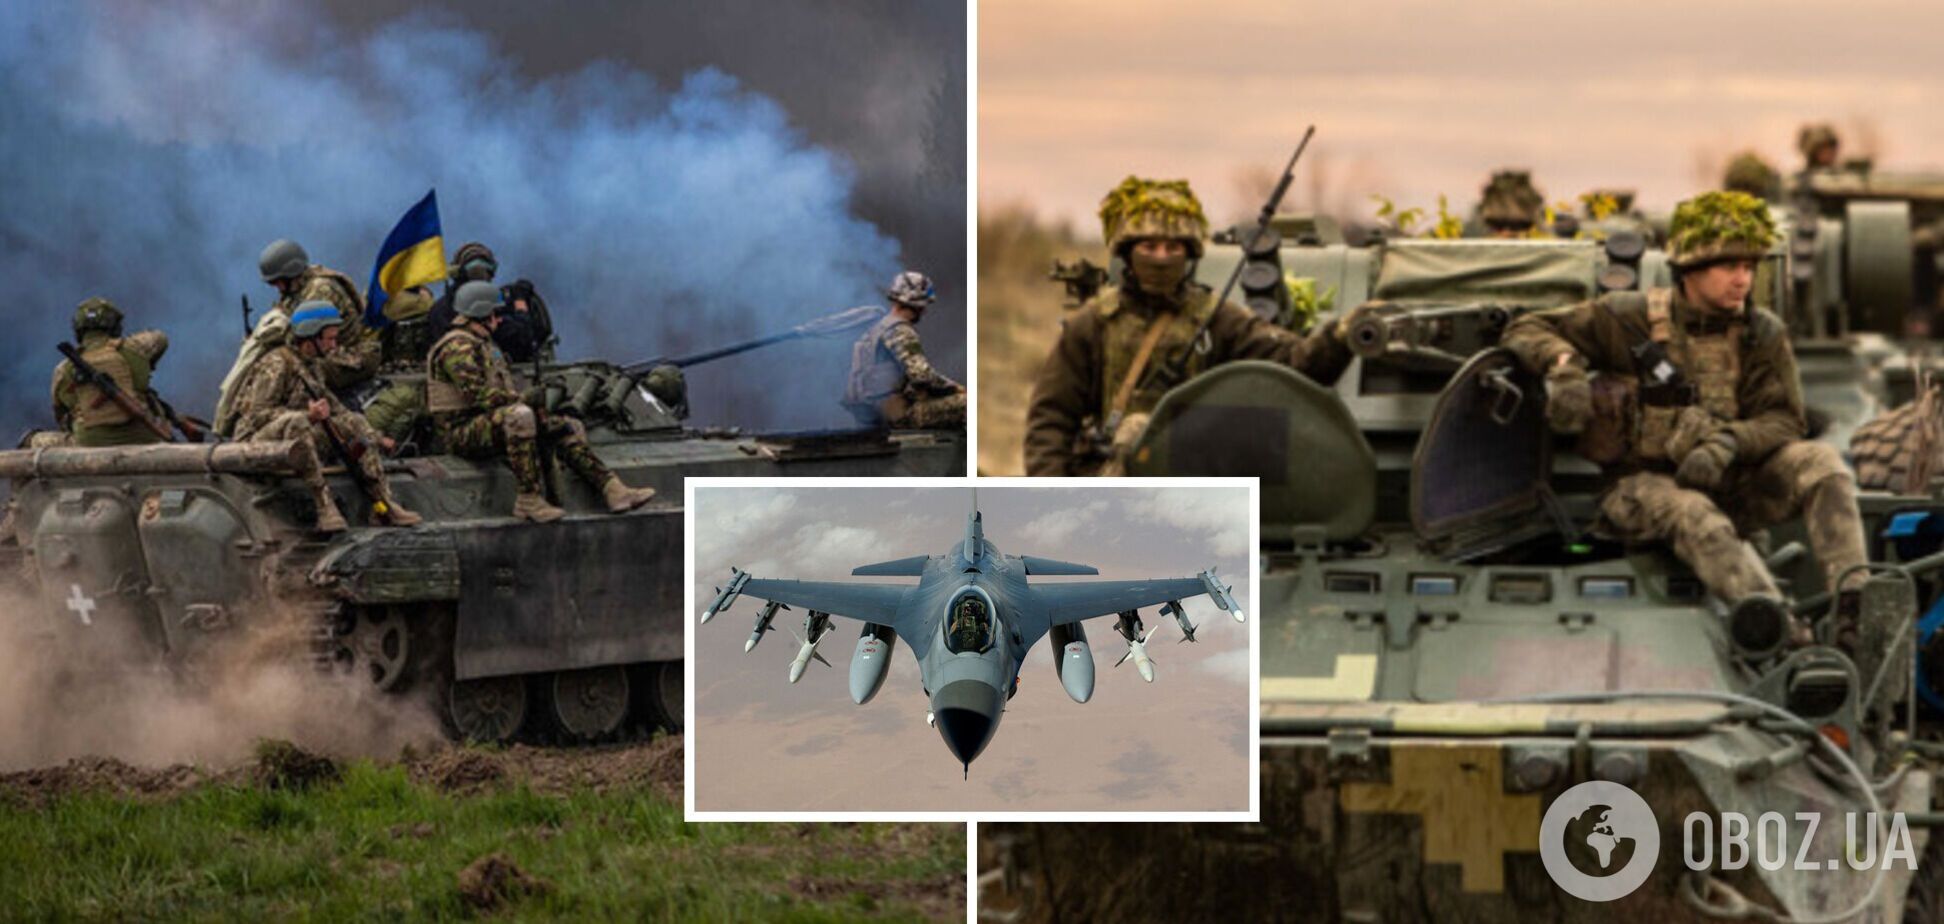 Силам обороны нельзя было наступать, не получив F-16, Путин готовит войну в Европе: интервью с полковником Свитаном